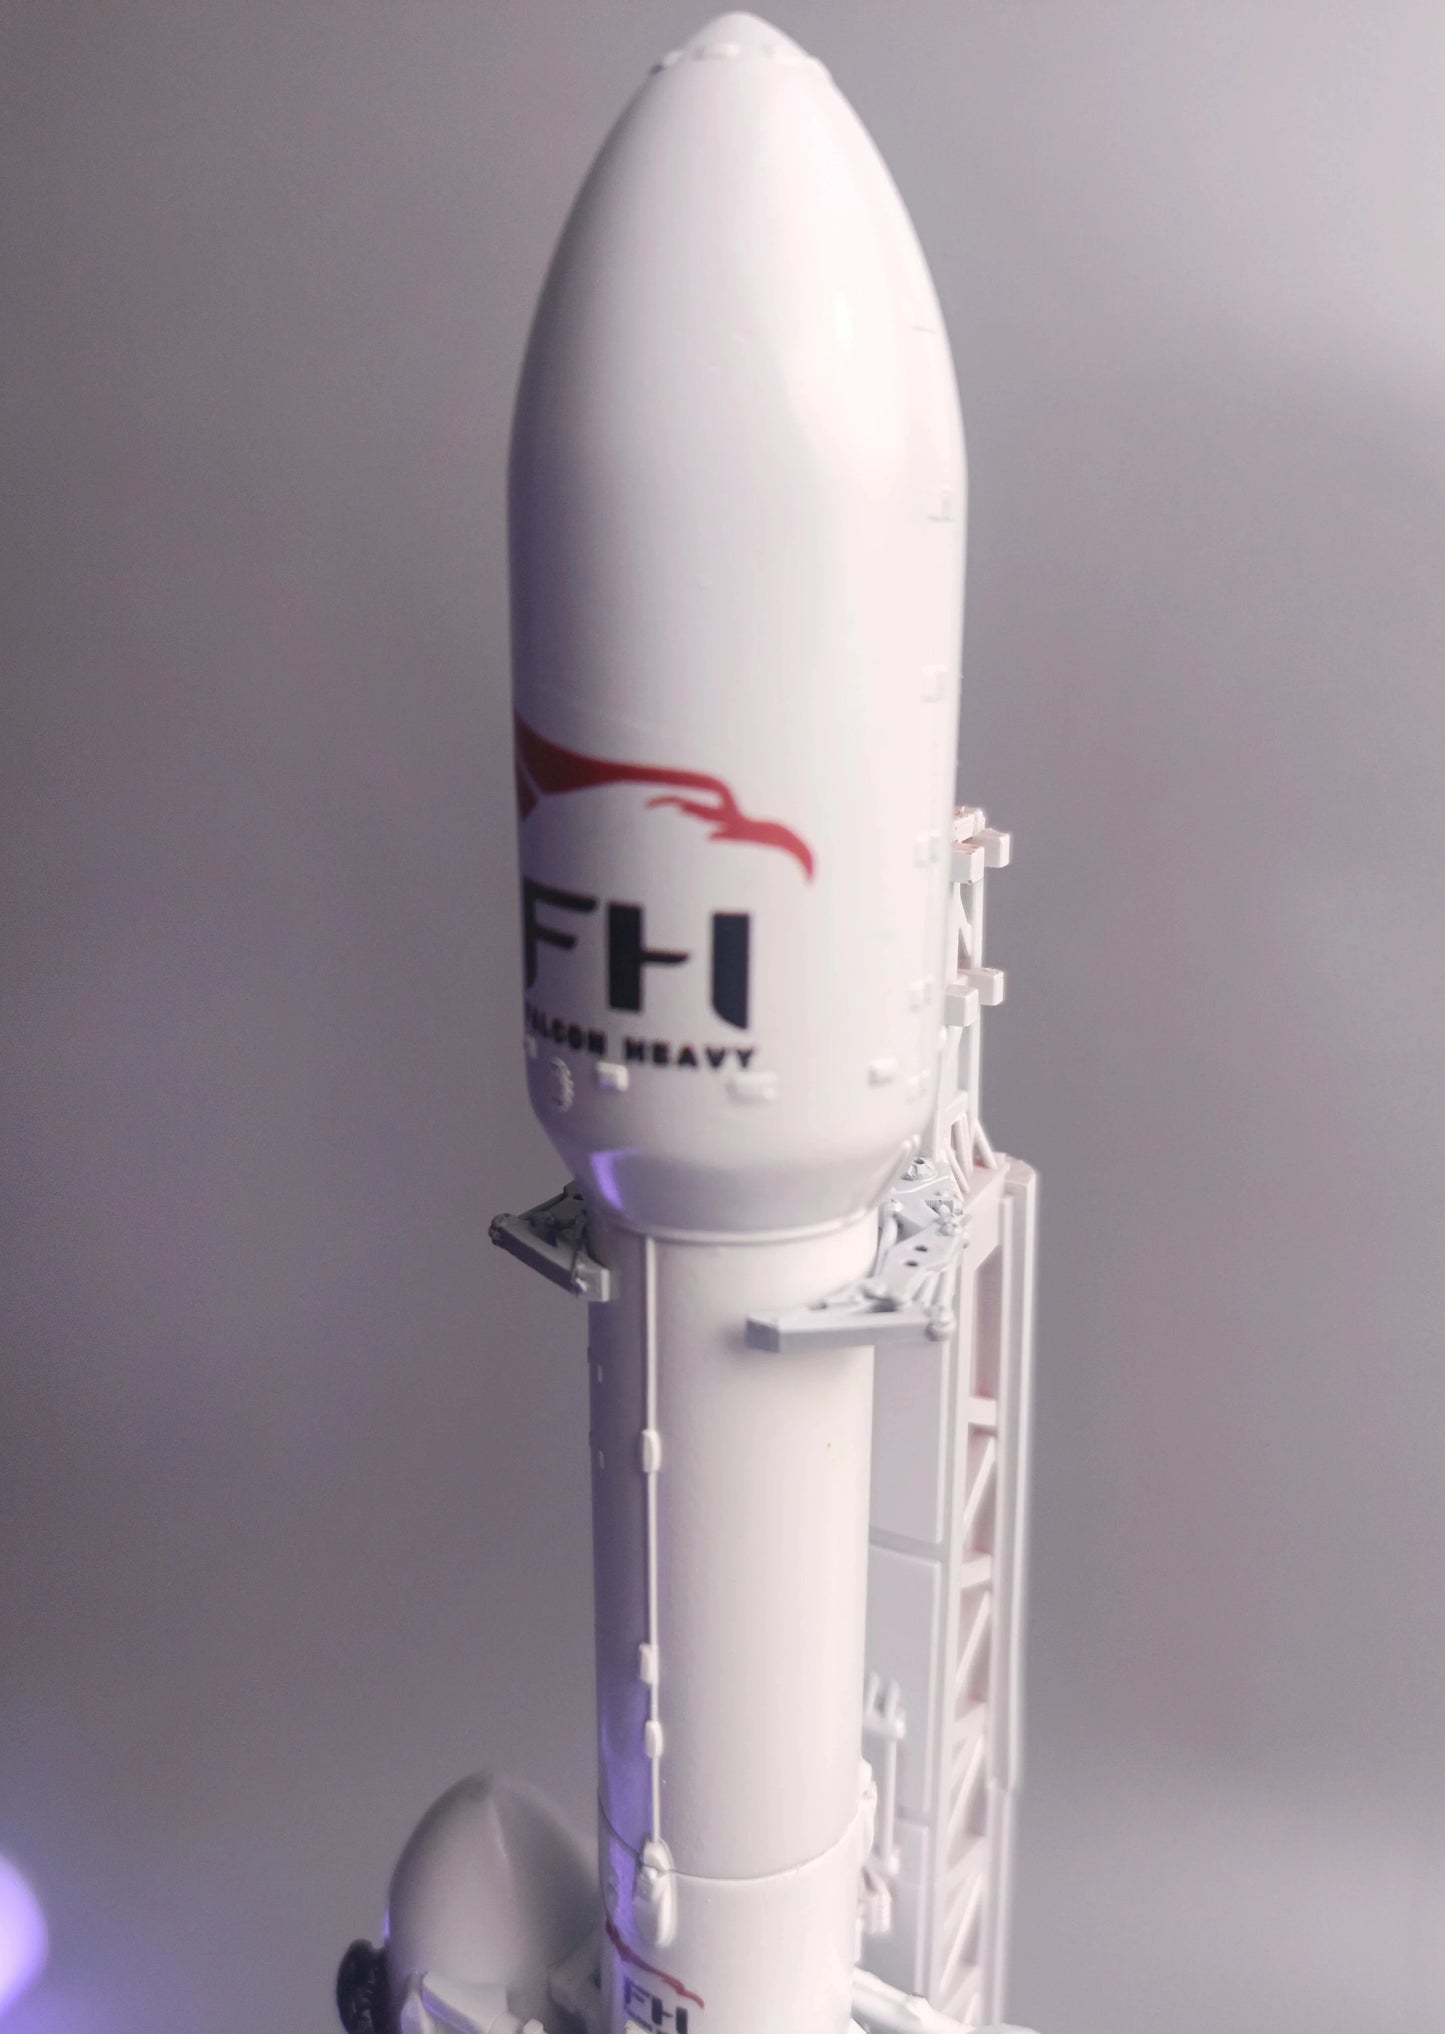 Falcon Heavy logo on the main fairing of the Falcon Heavy rocket. Model 1:200